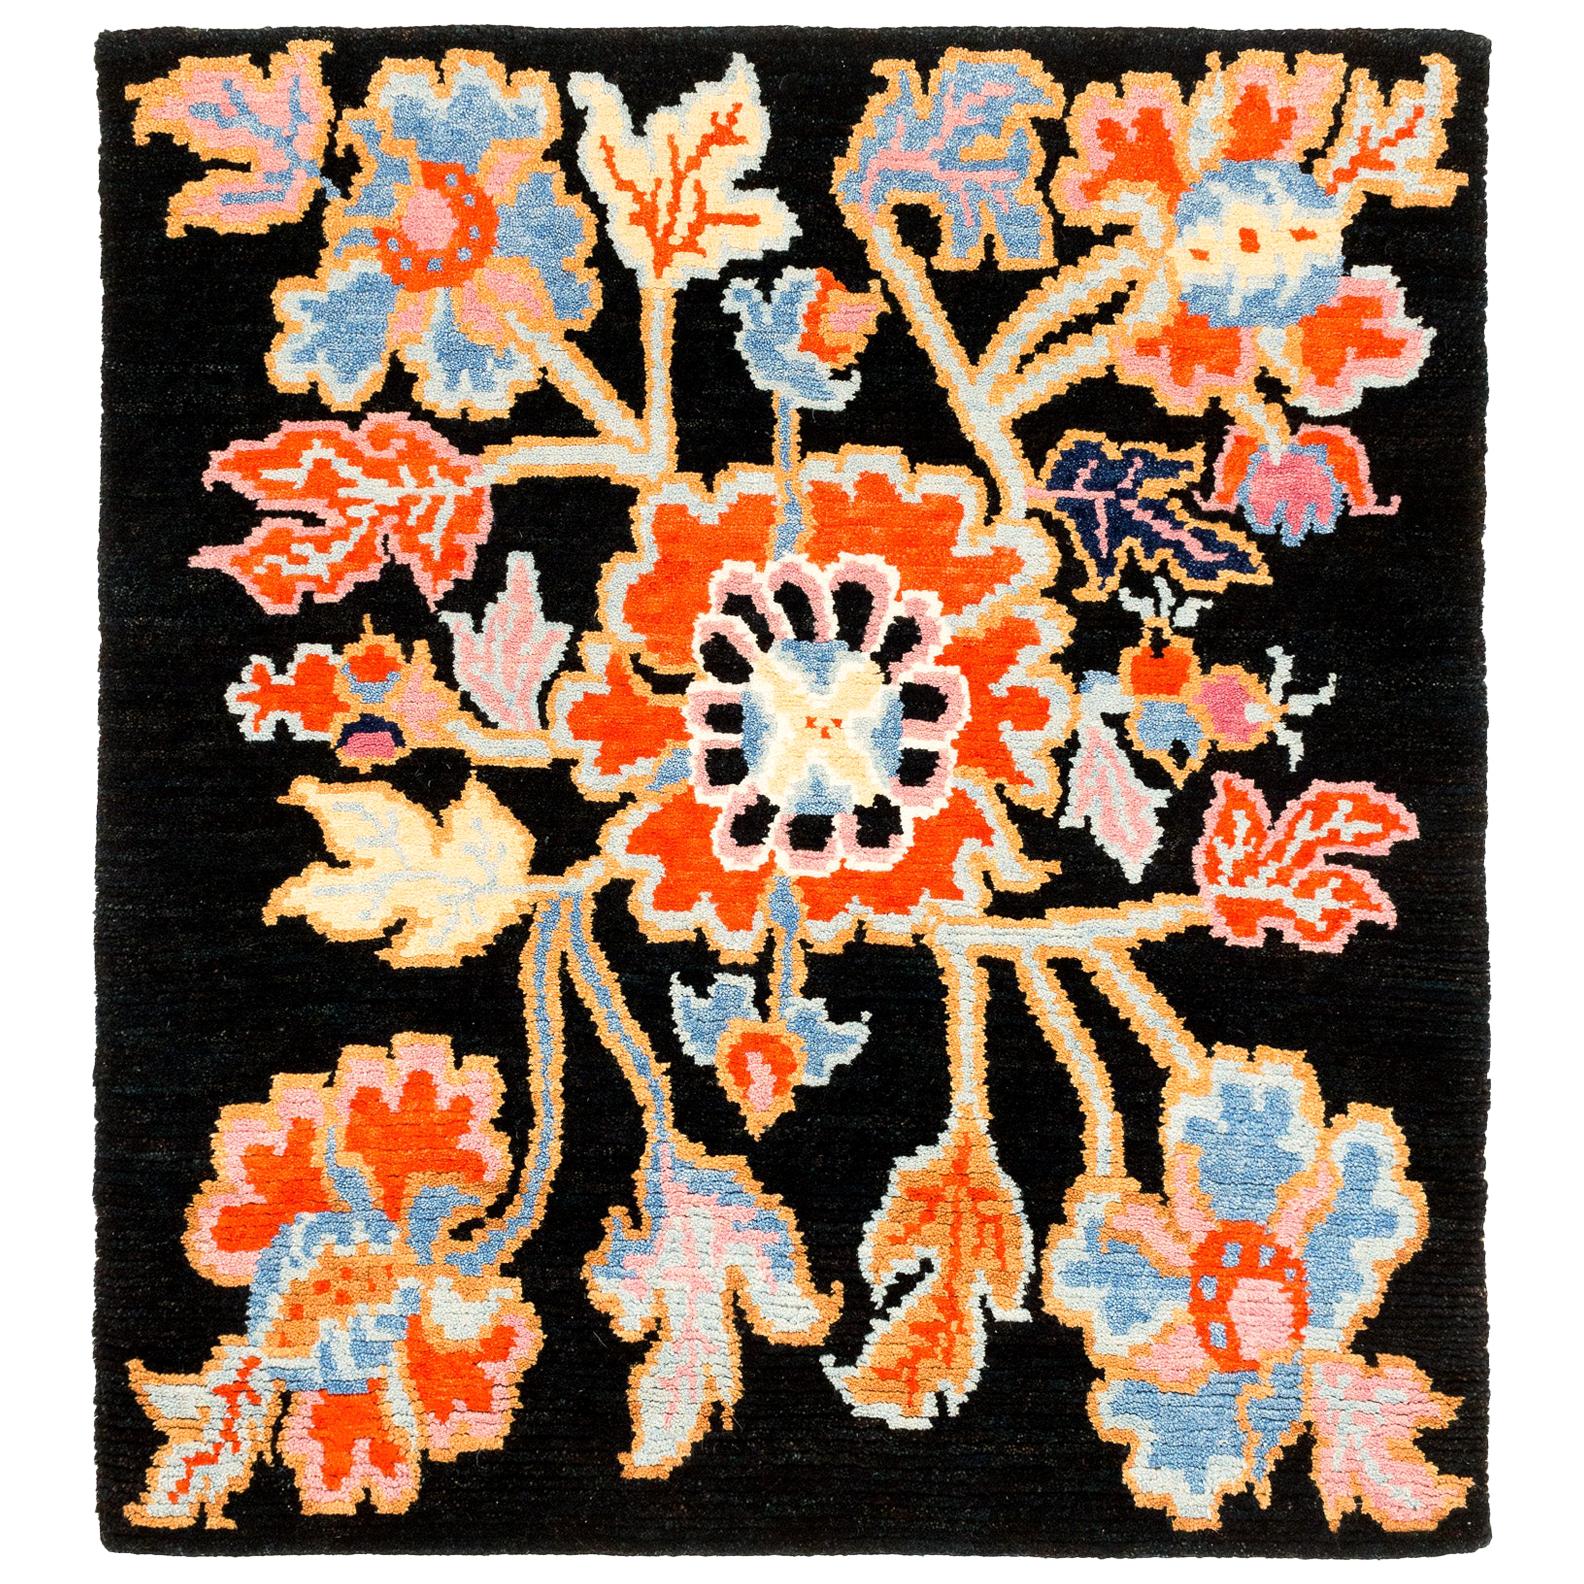 Tibetischer Blumenteppich in Schwarz, Orange und Blau